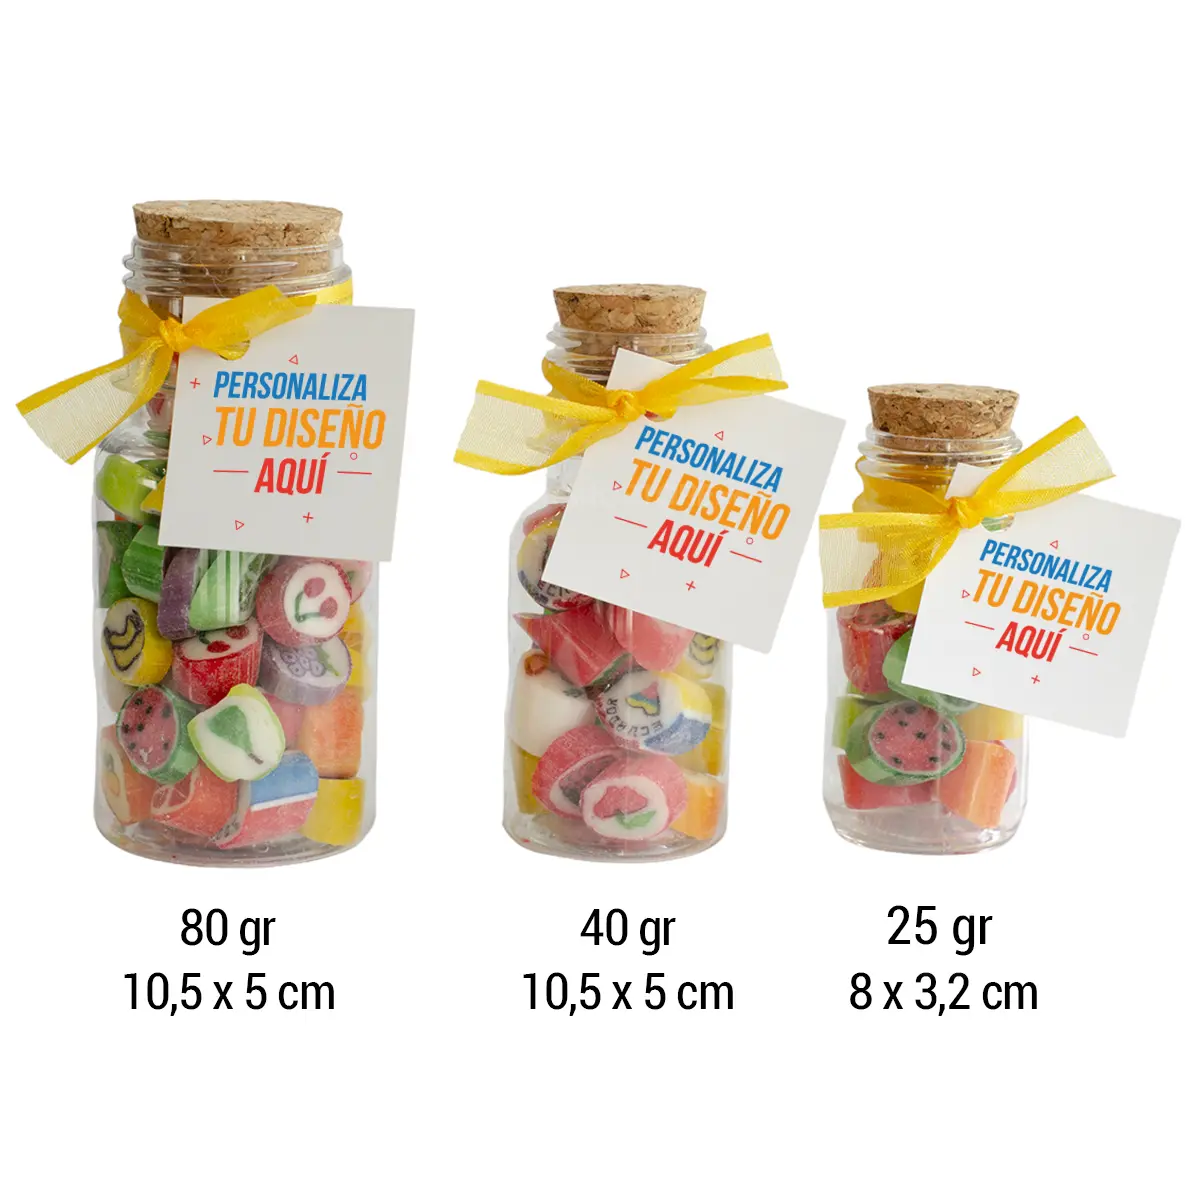 HGDL0001-Caramelos-Candy-personalizados-25-gr-adhesivo-medida